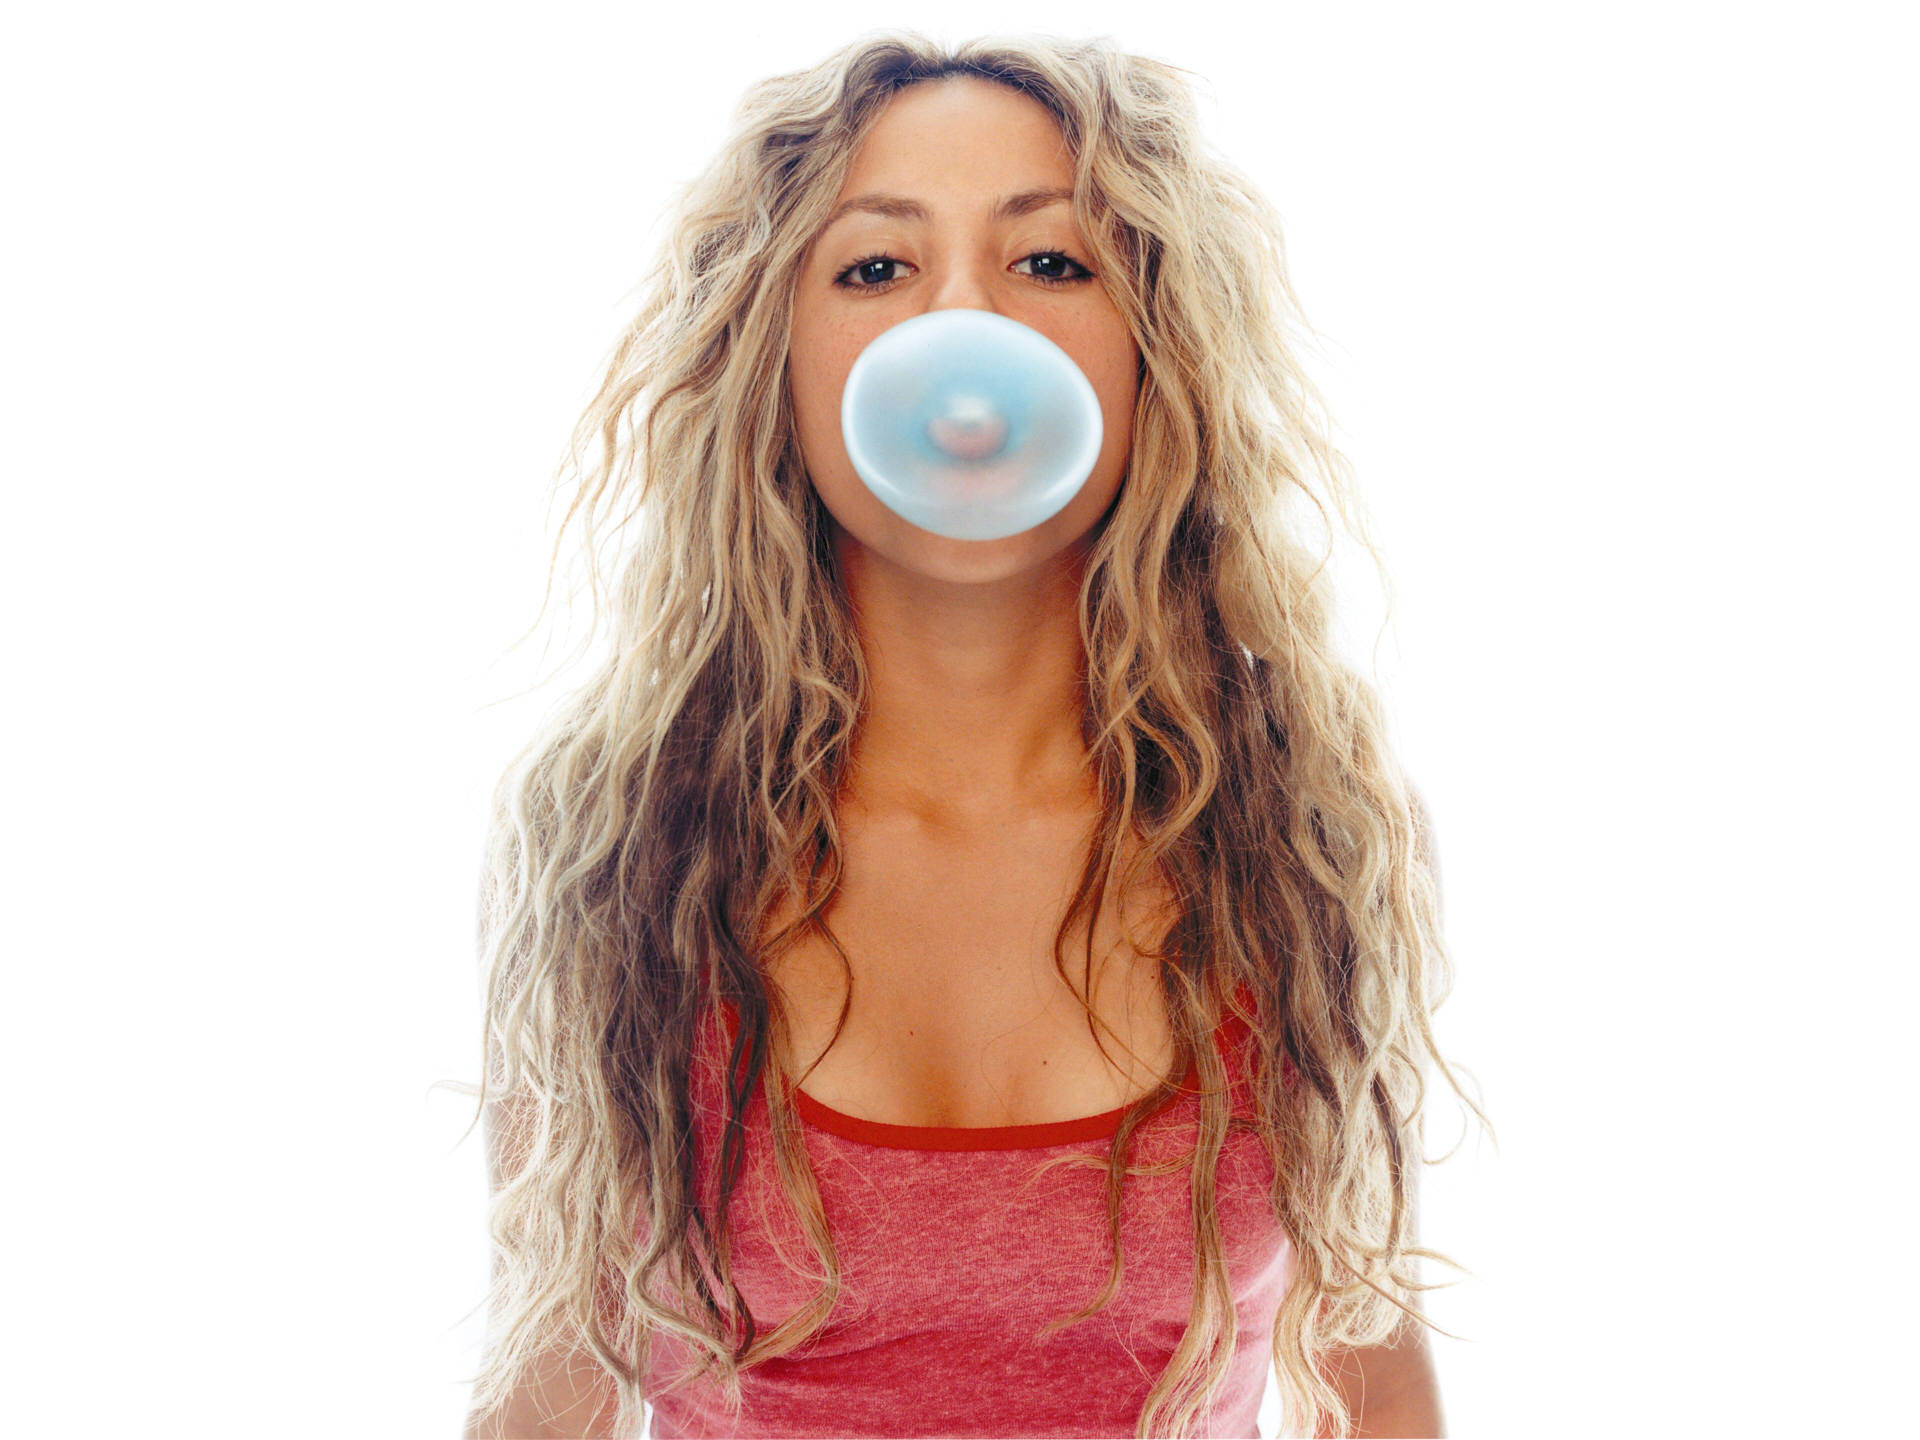 Shakirabubble Gum Skulle Kunna Översättas Till 